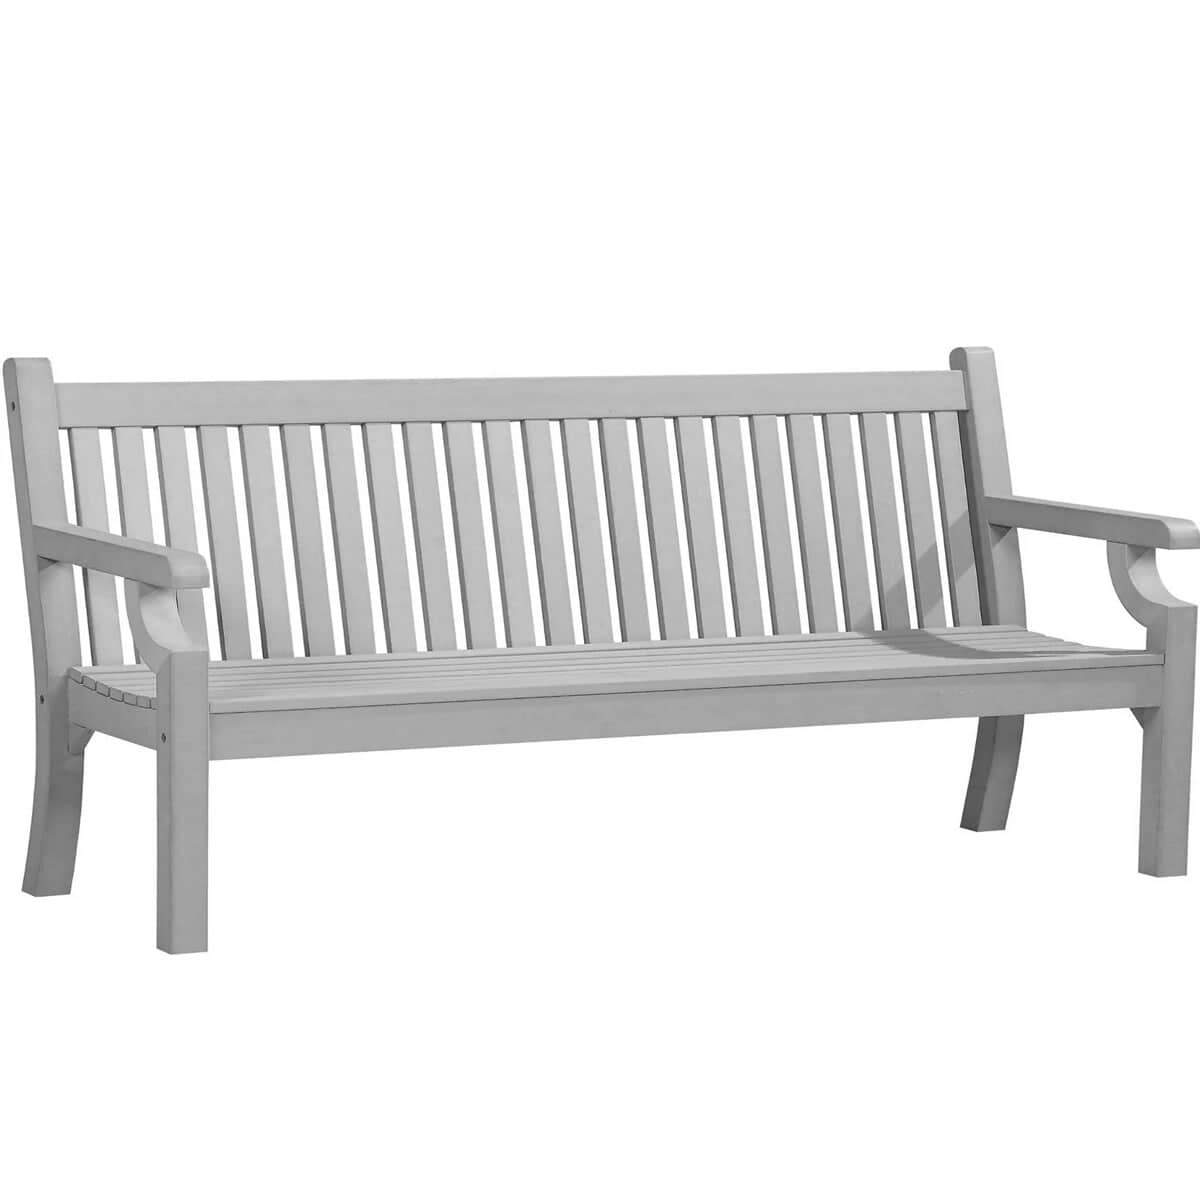 Winawood Sandwick 4 Seat Thin Slat Bench Stone Grey